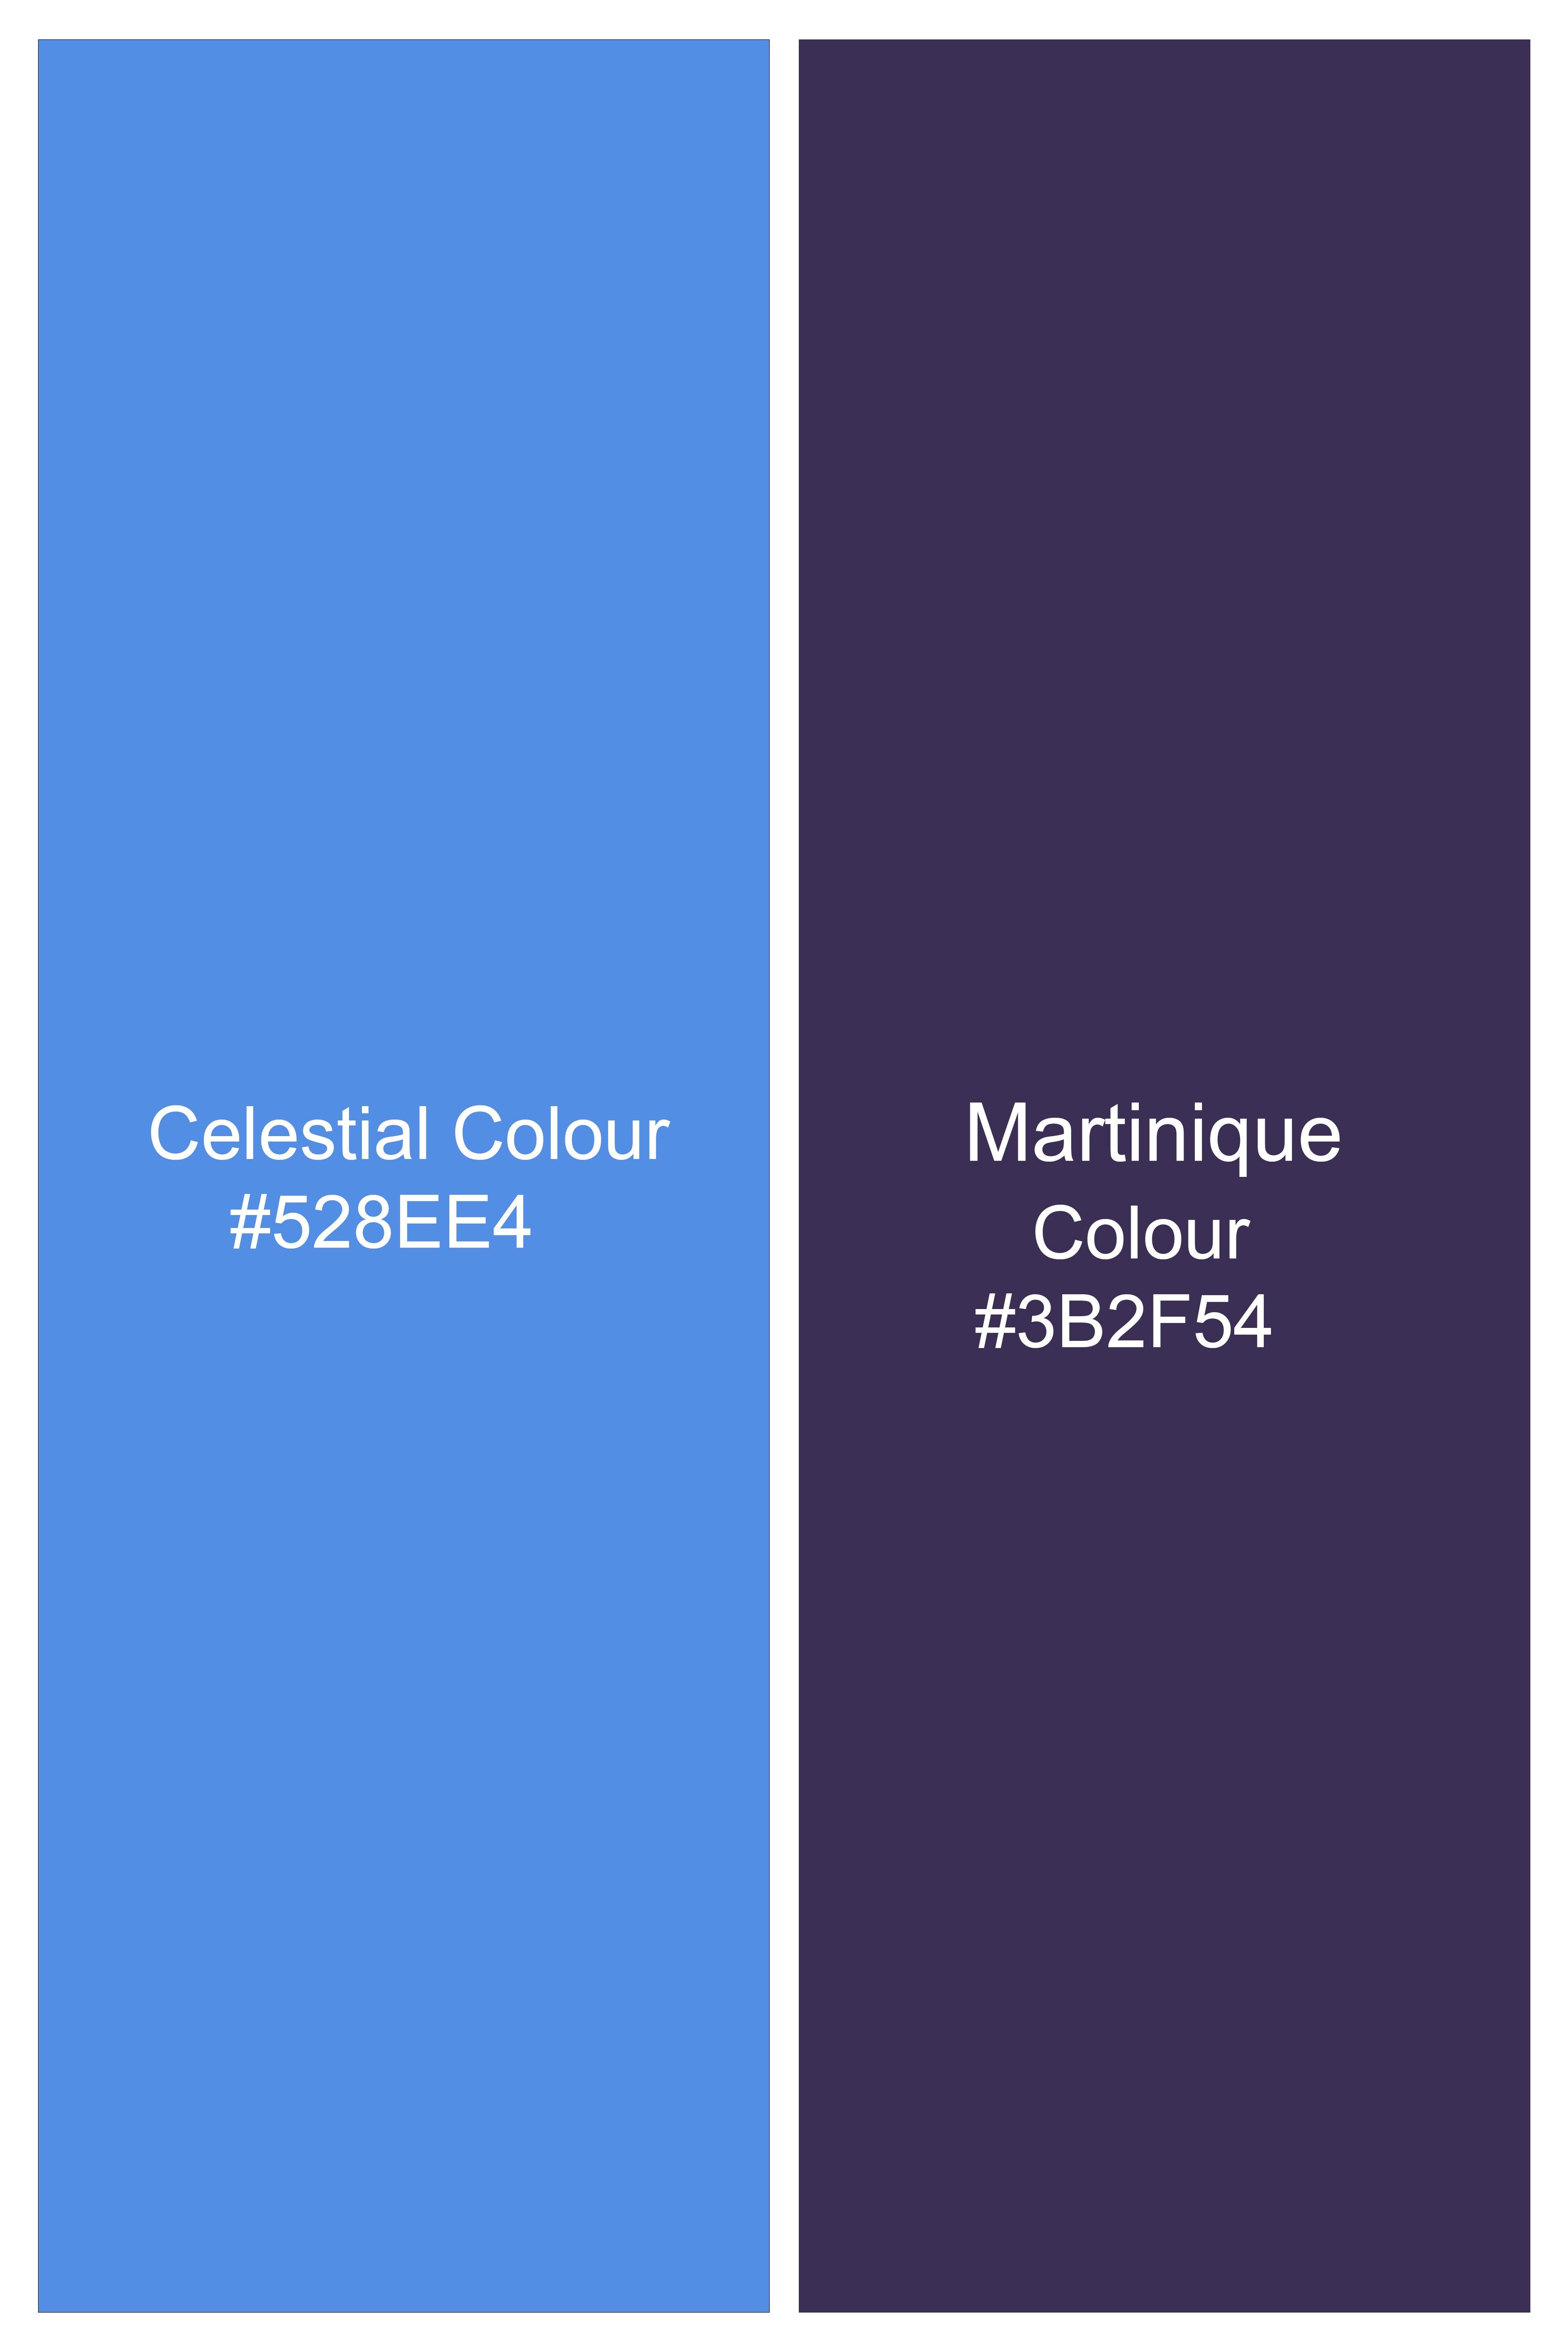 Celestial Blue and Martinique Purple Plaid Wool Rich Designer Blazer BL2855-SB-D396-36, BL2855-SB-D396-38, BL2855-SB-D396-40, BL2855-SB-D396-42, BL2855-SB-D396-44, BL2855-SB-D396-46, BL2855-SB-D396-48, BL2855-SB-D396-50, BL2855-SB-D396-52, BL2855-SB-D396-54, BL2855-SB-D396-56, BL2855-SB-D396-58, BL2855-SB-D396-60